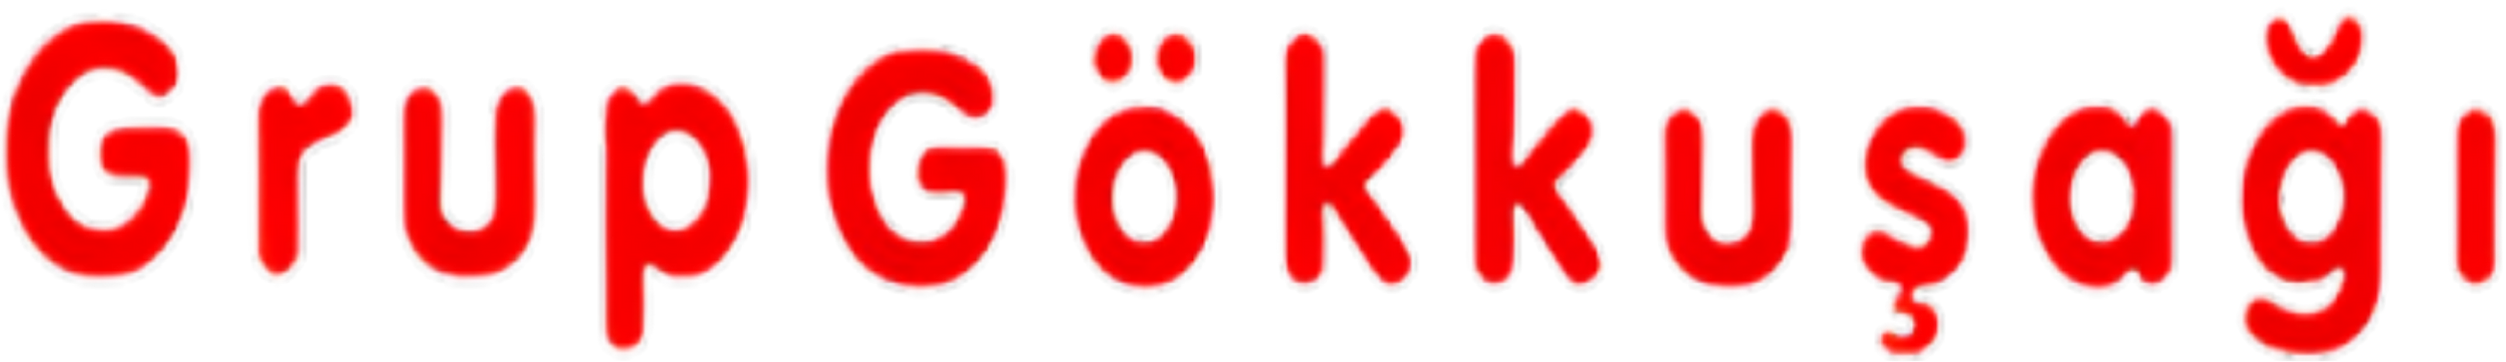 Grup Gökkuşağı Logo